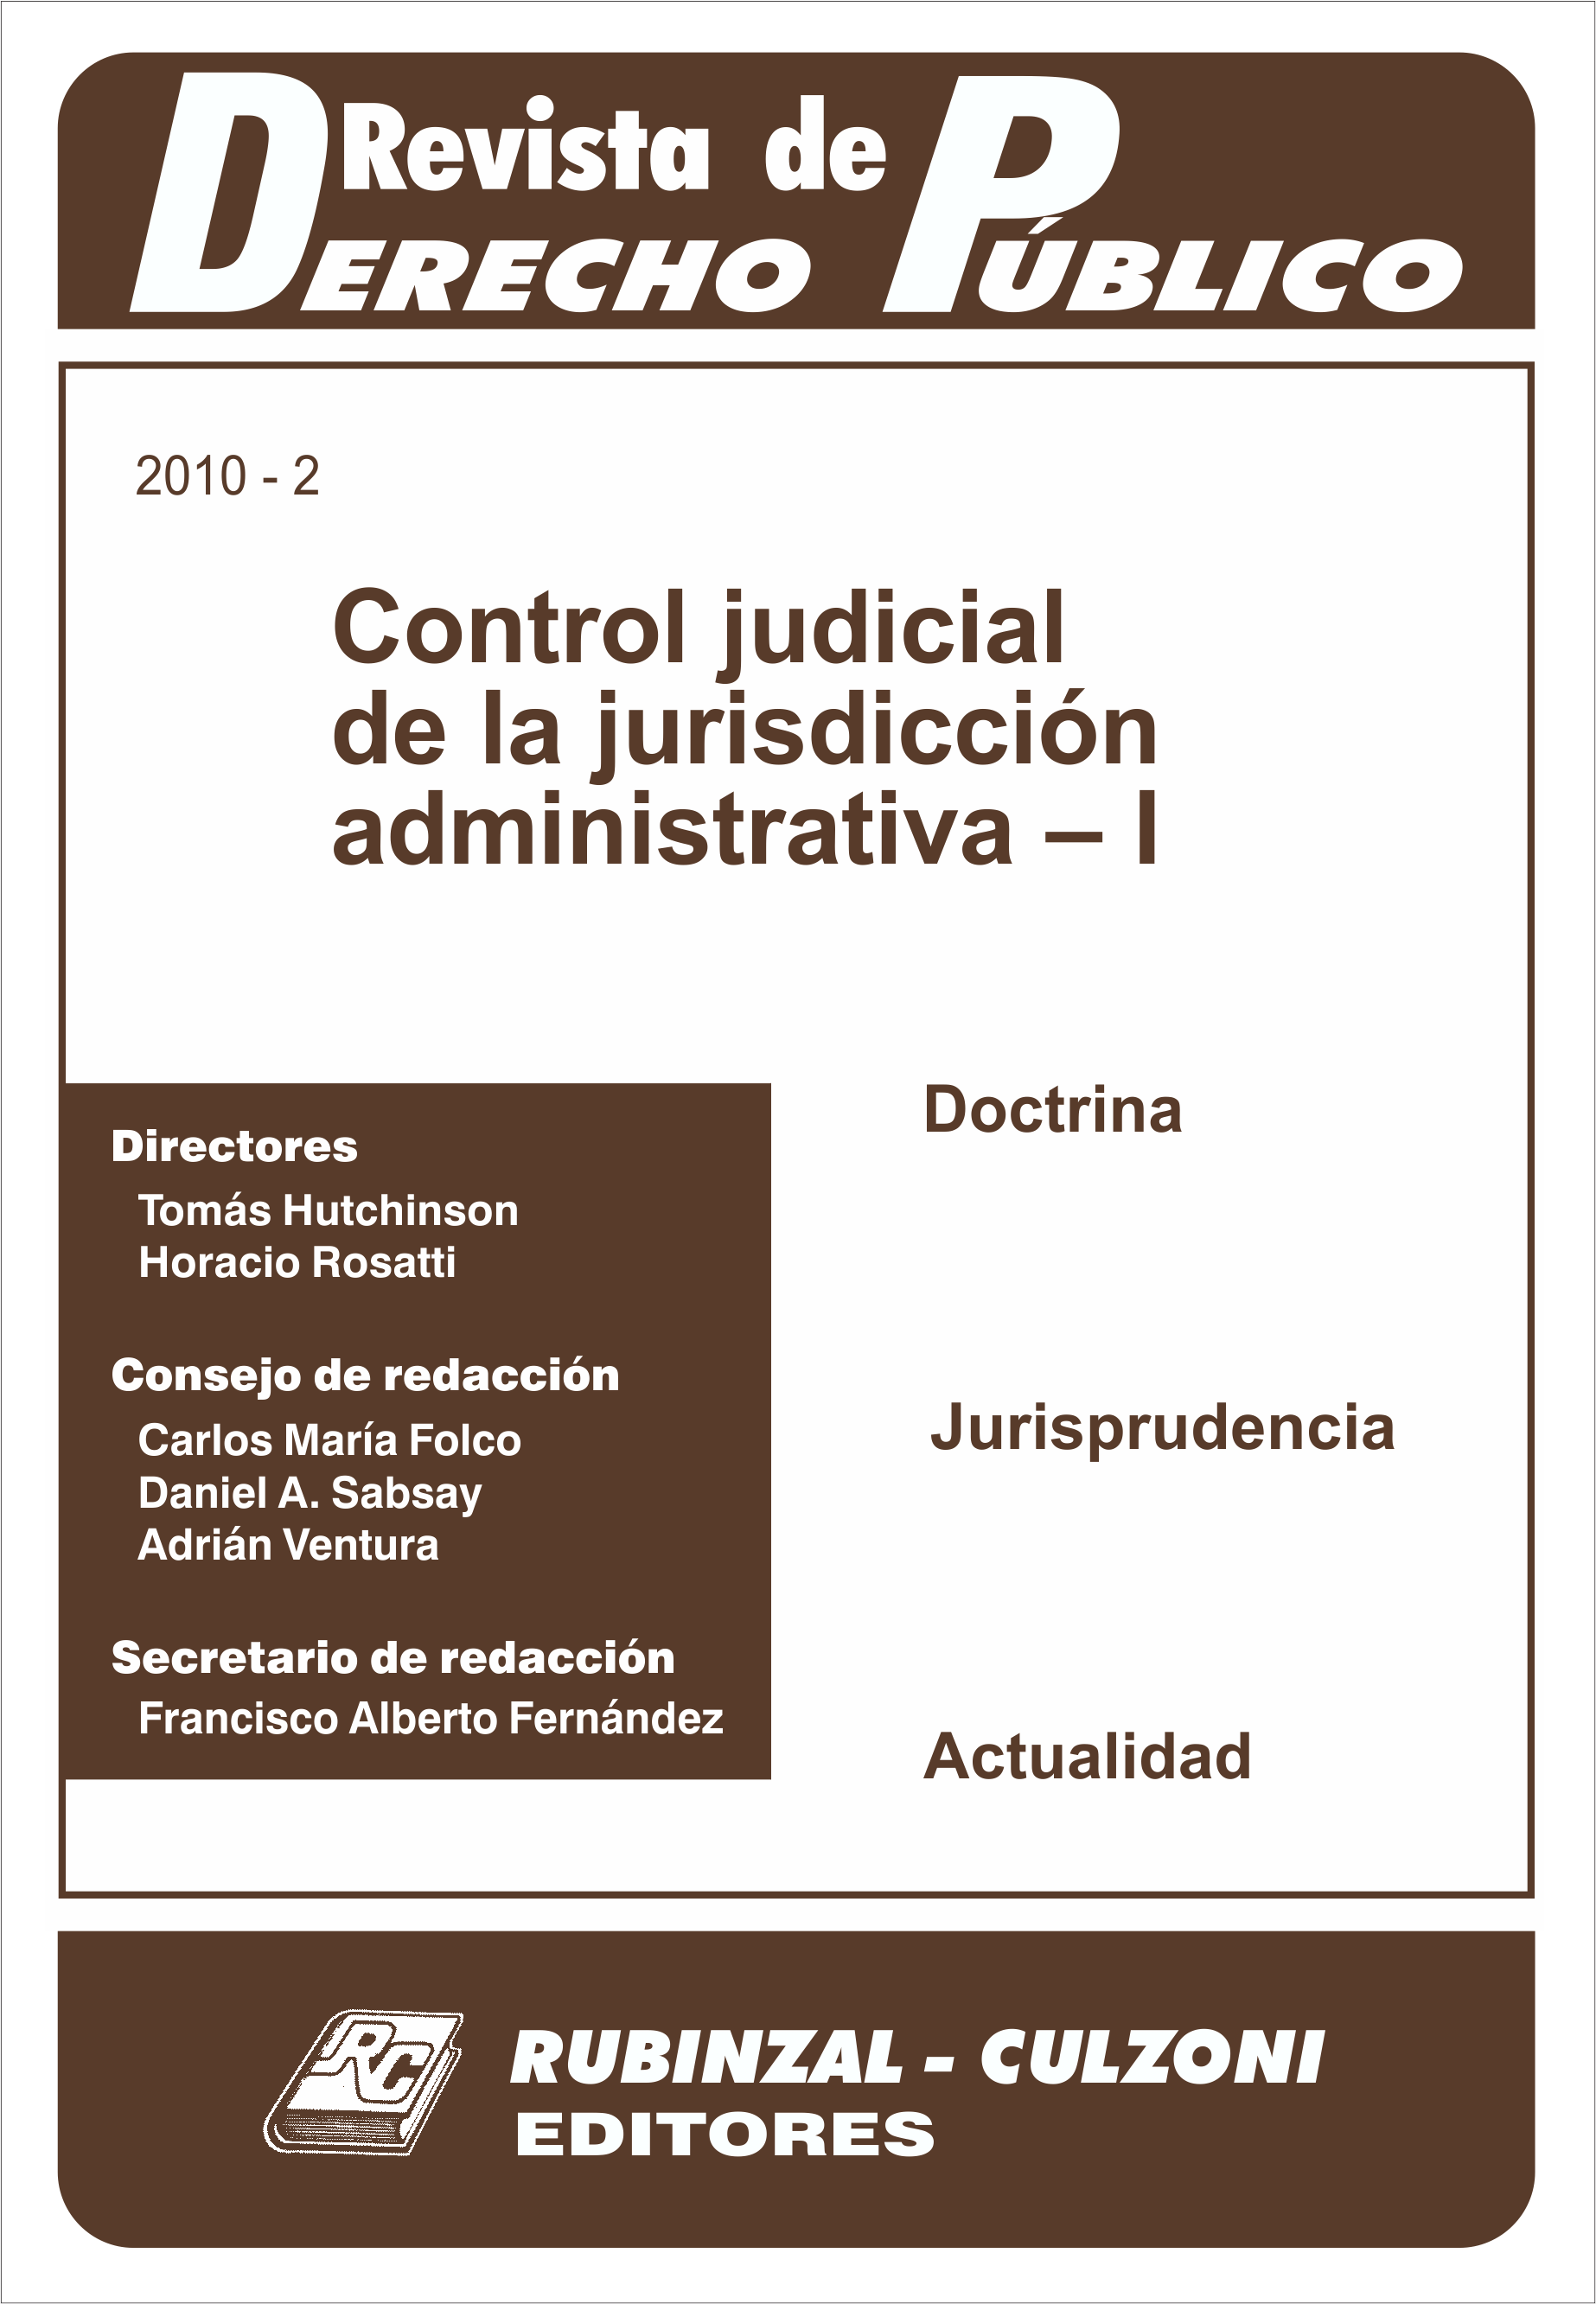 Revista de Derecho Público - Control judicial de la jurisdicción administrativa - I